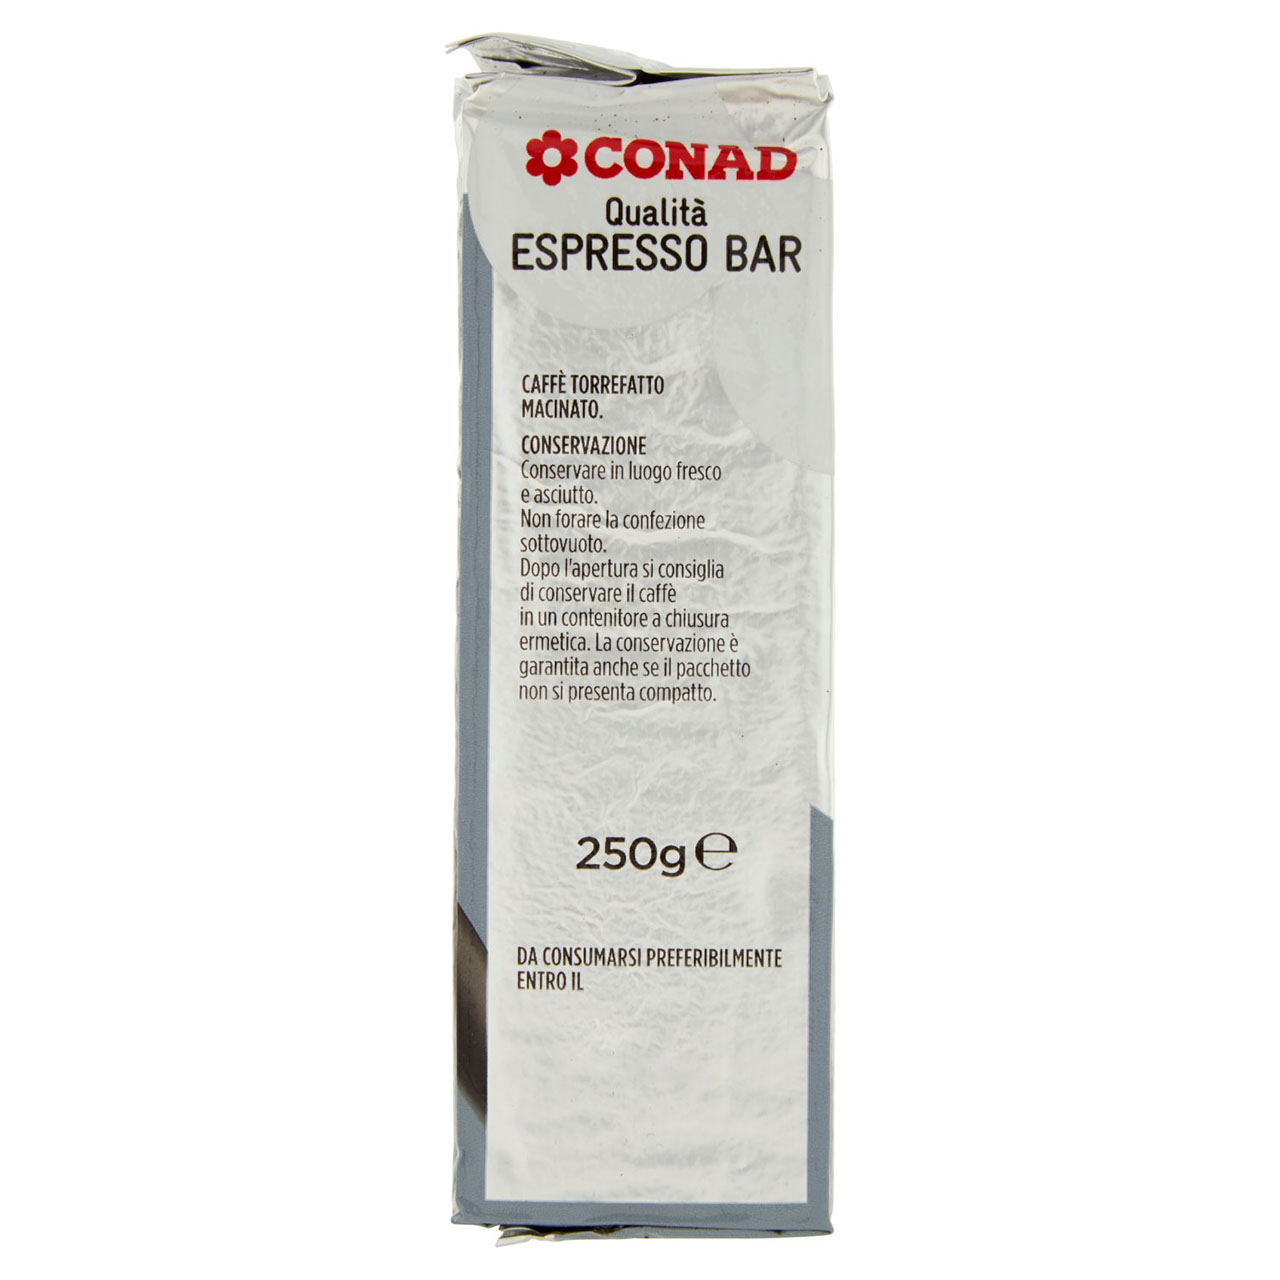 Caffè Qualità Espresso BAR Macchine Espresso Conad